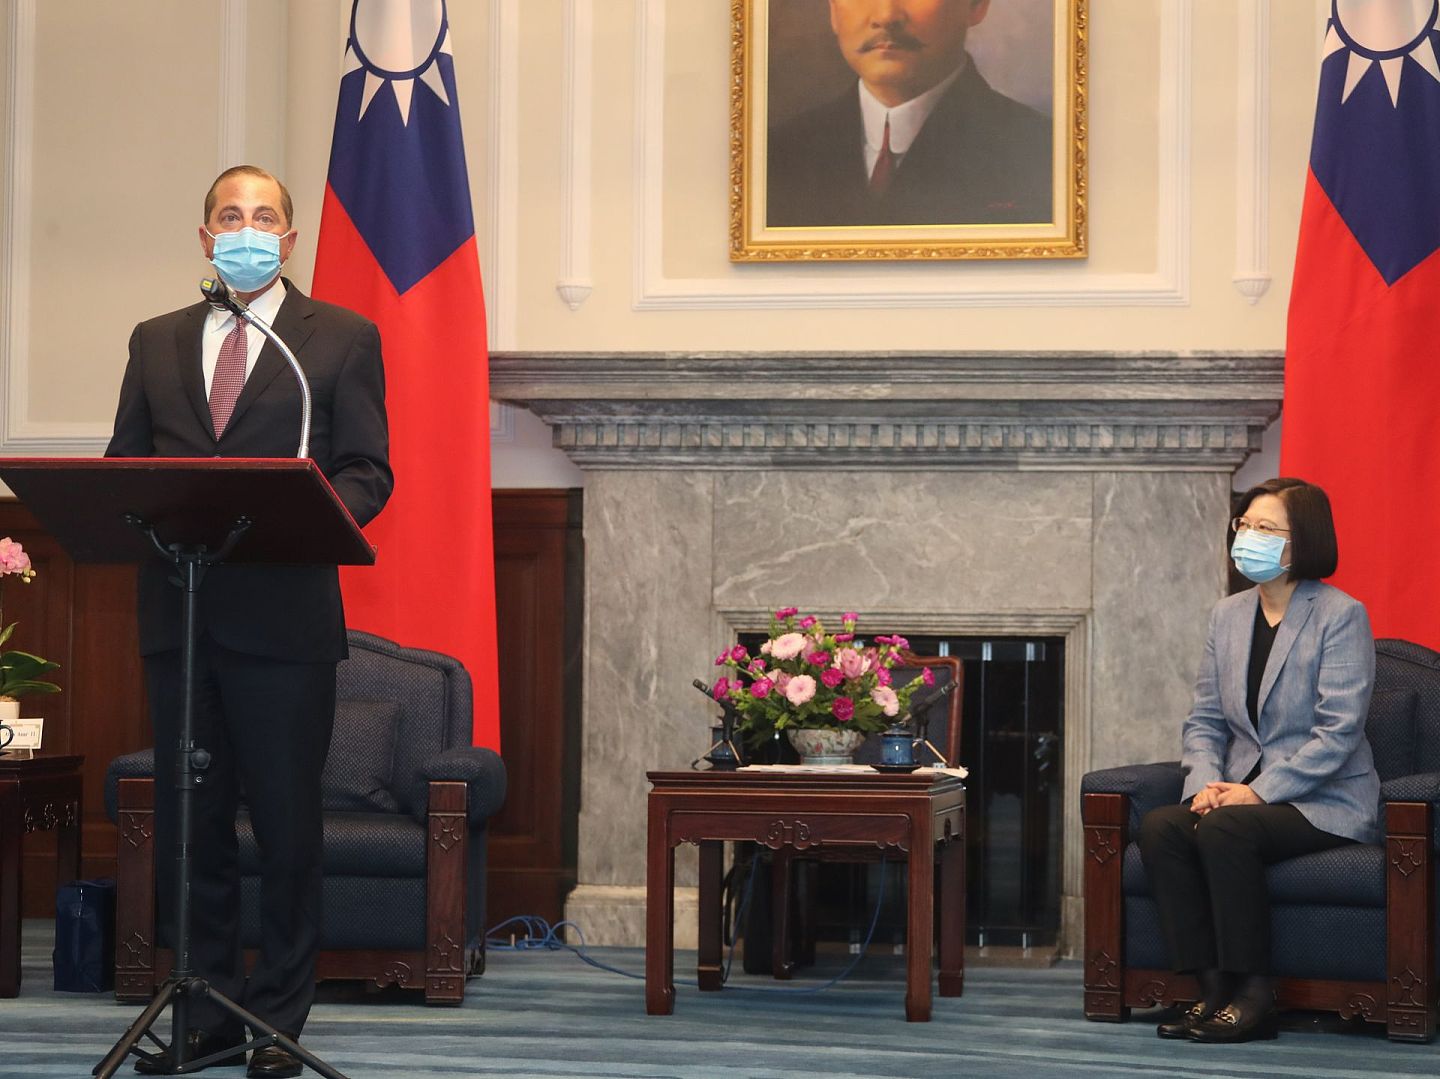 美台关系近来不断升温。 美国卫生部长阿扎（Alex Azar）8月份访问了台湾。 8月10日，阿扎获得台湾领导人蔡英文接见。 （中央社）